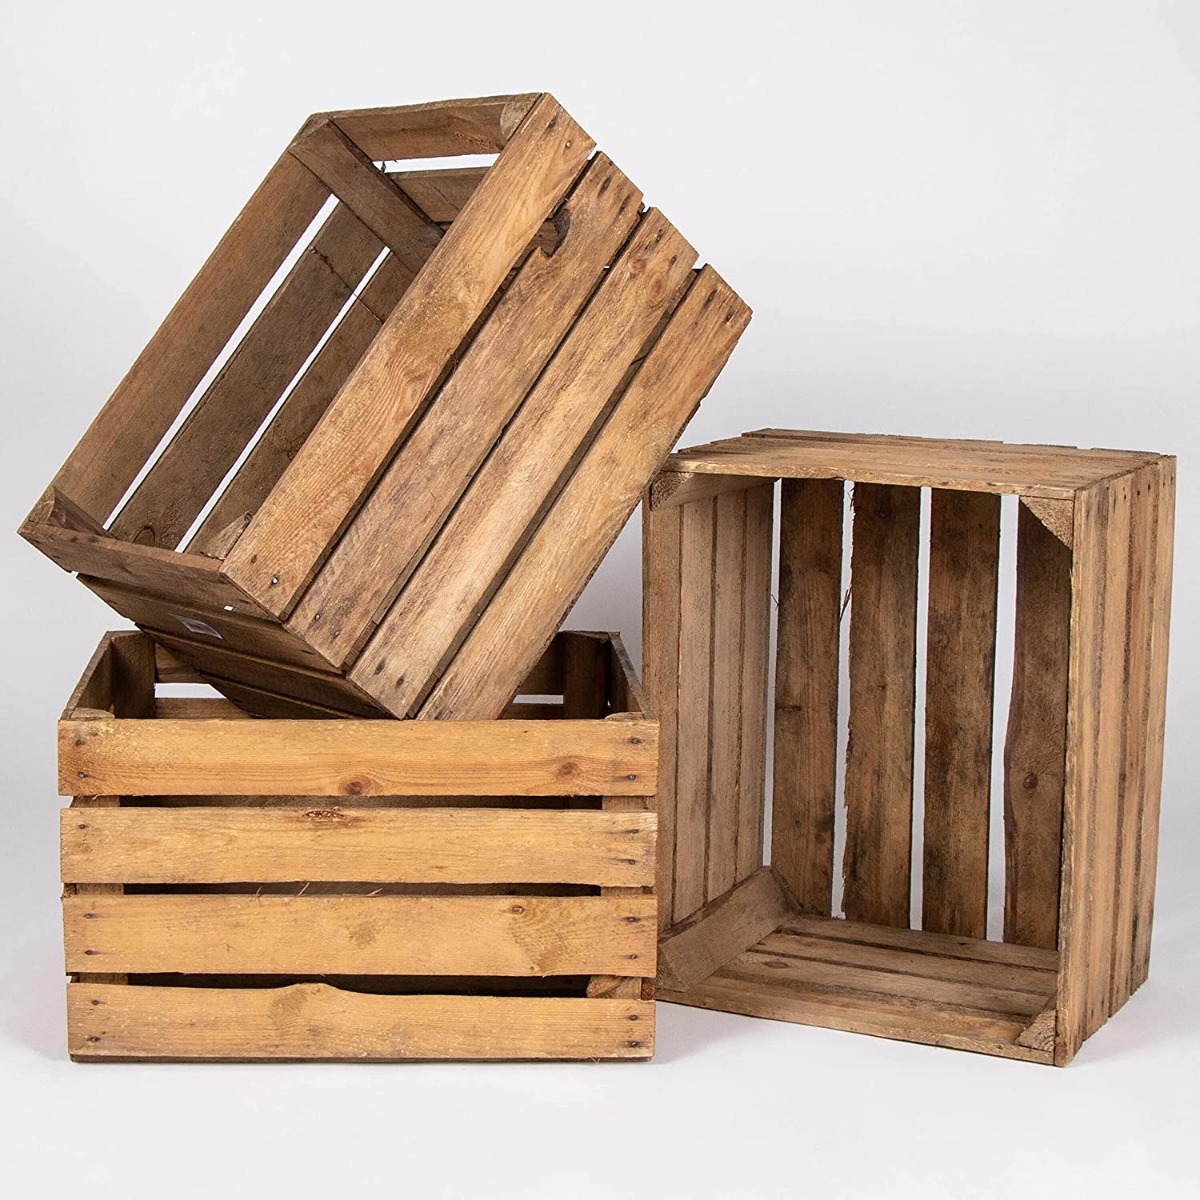 Kisten Holz leicht zu bestellen bei Holzkistenkonig - Holzkisten König